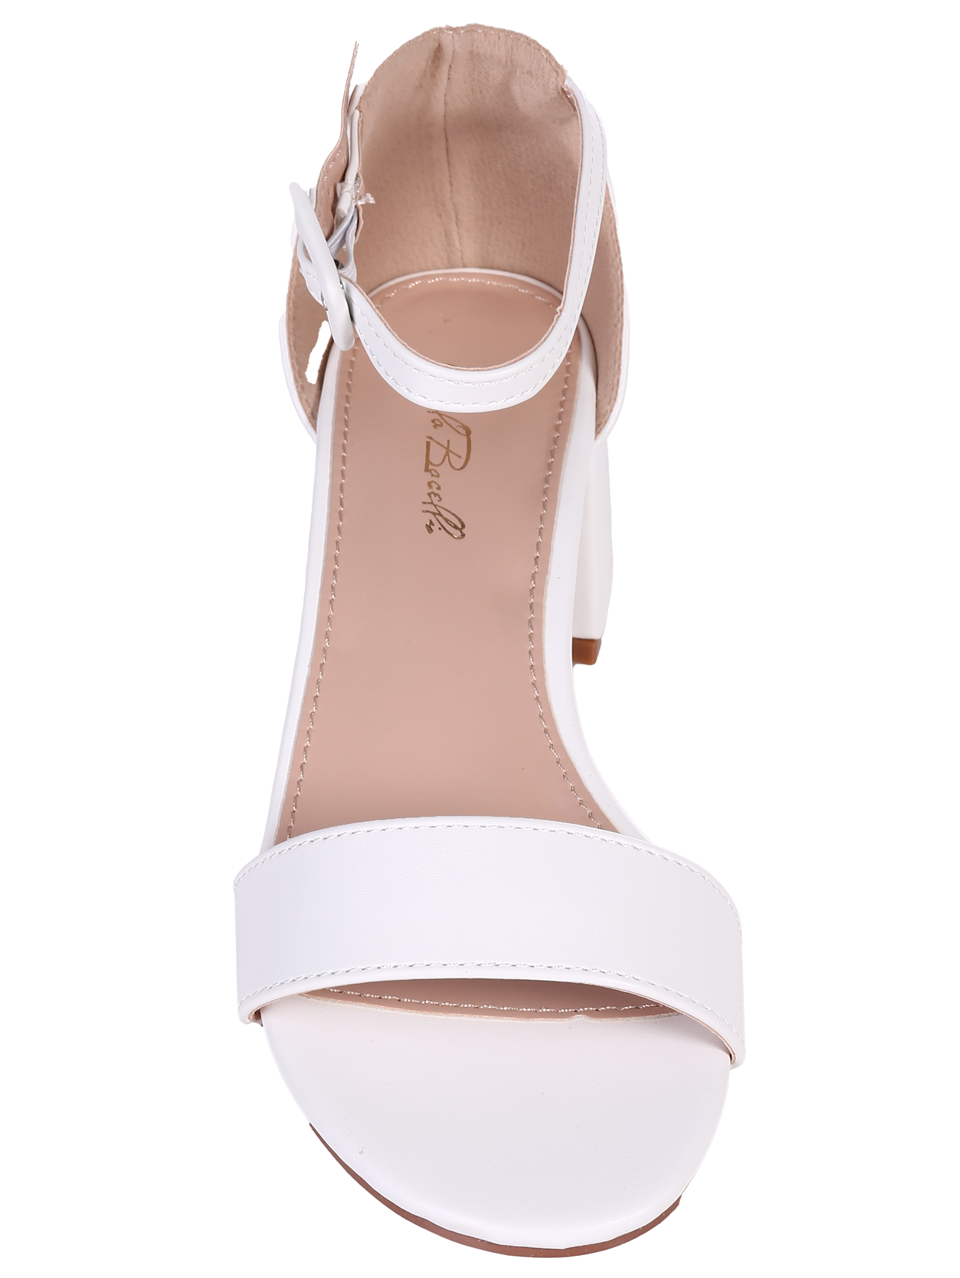 Елегантни дамски сандали в бяло 4M-24041 white-22178